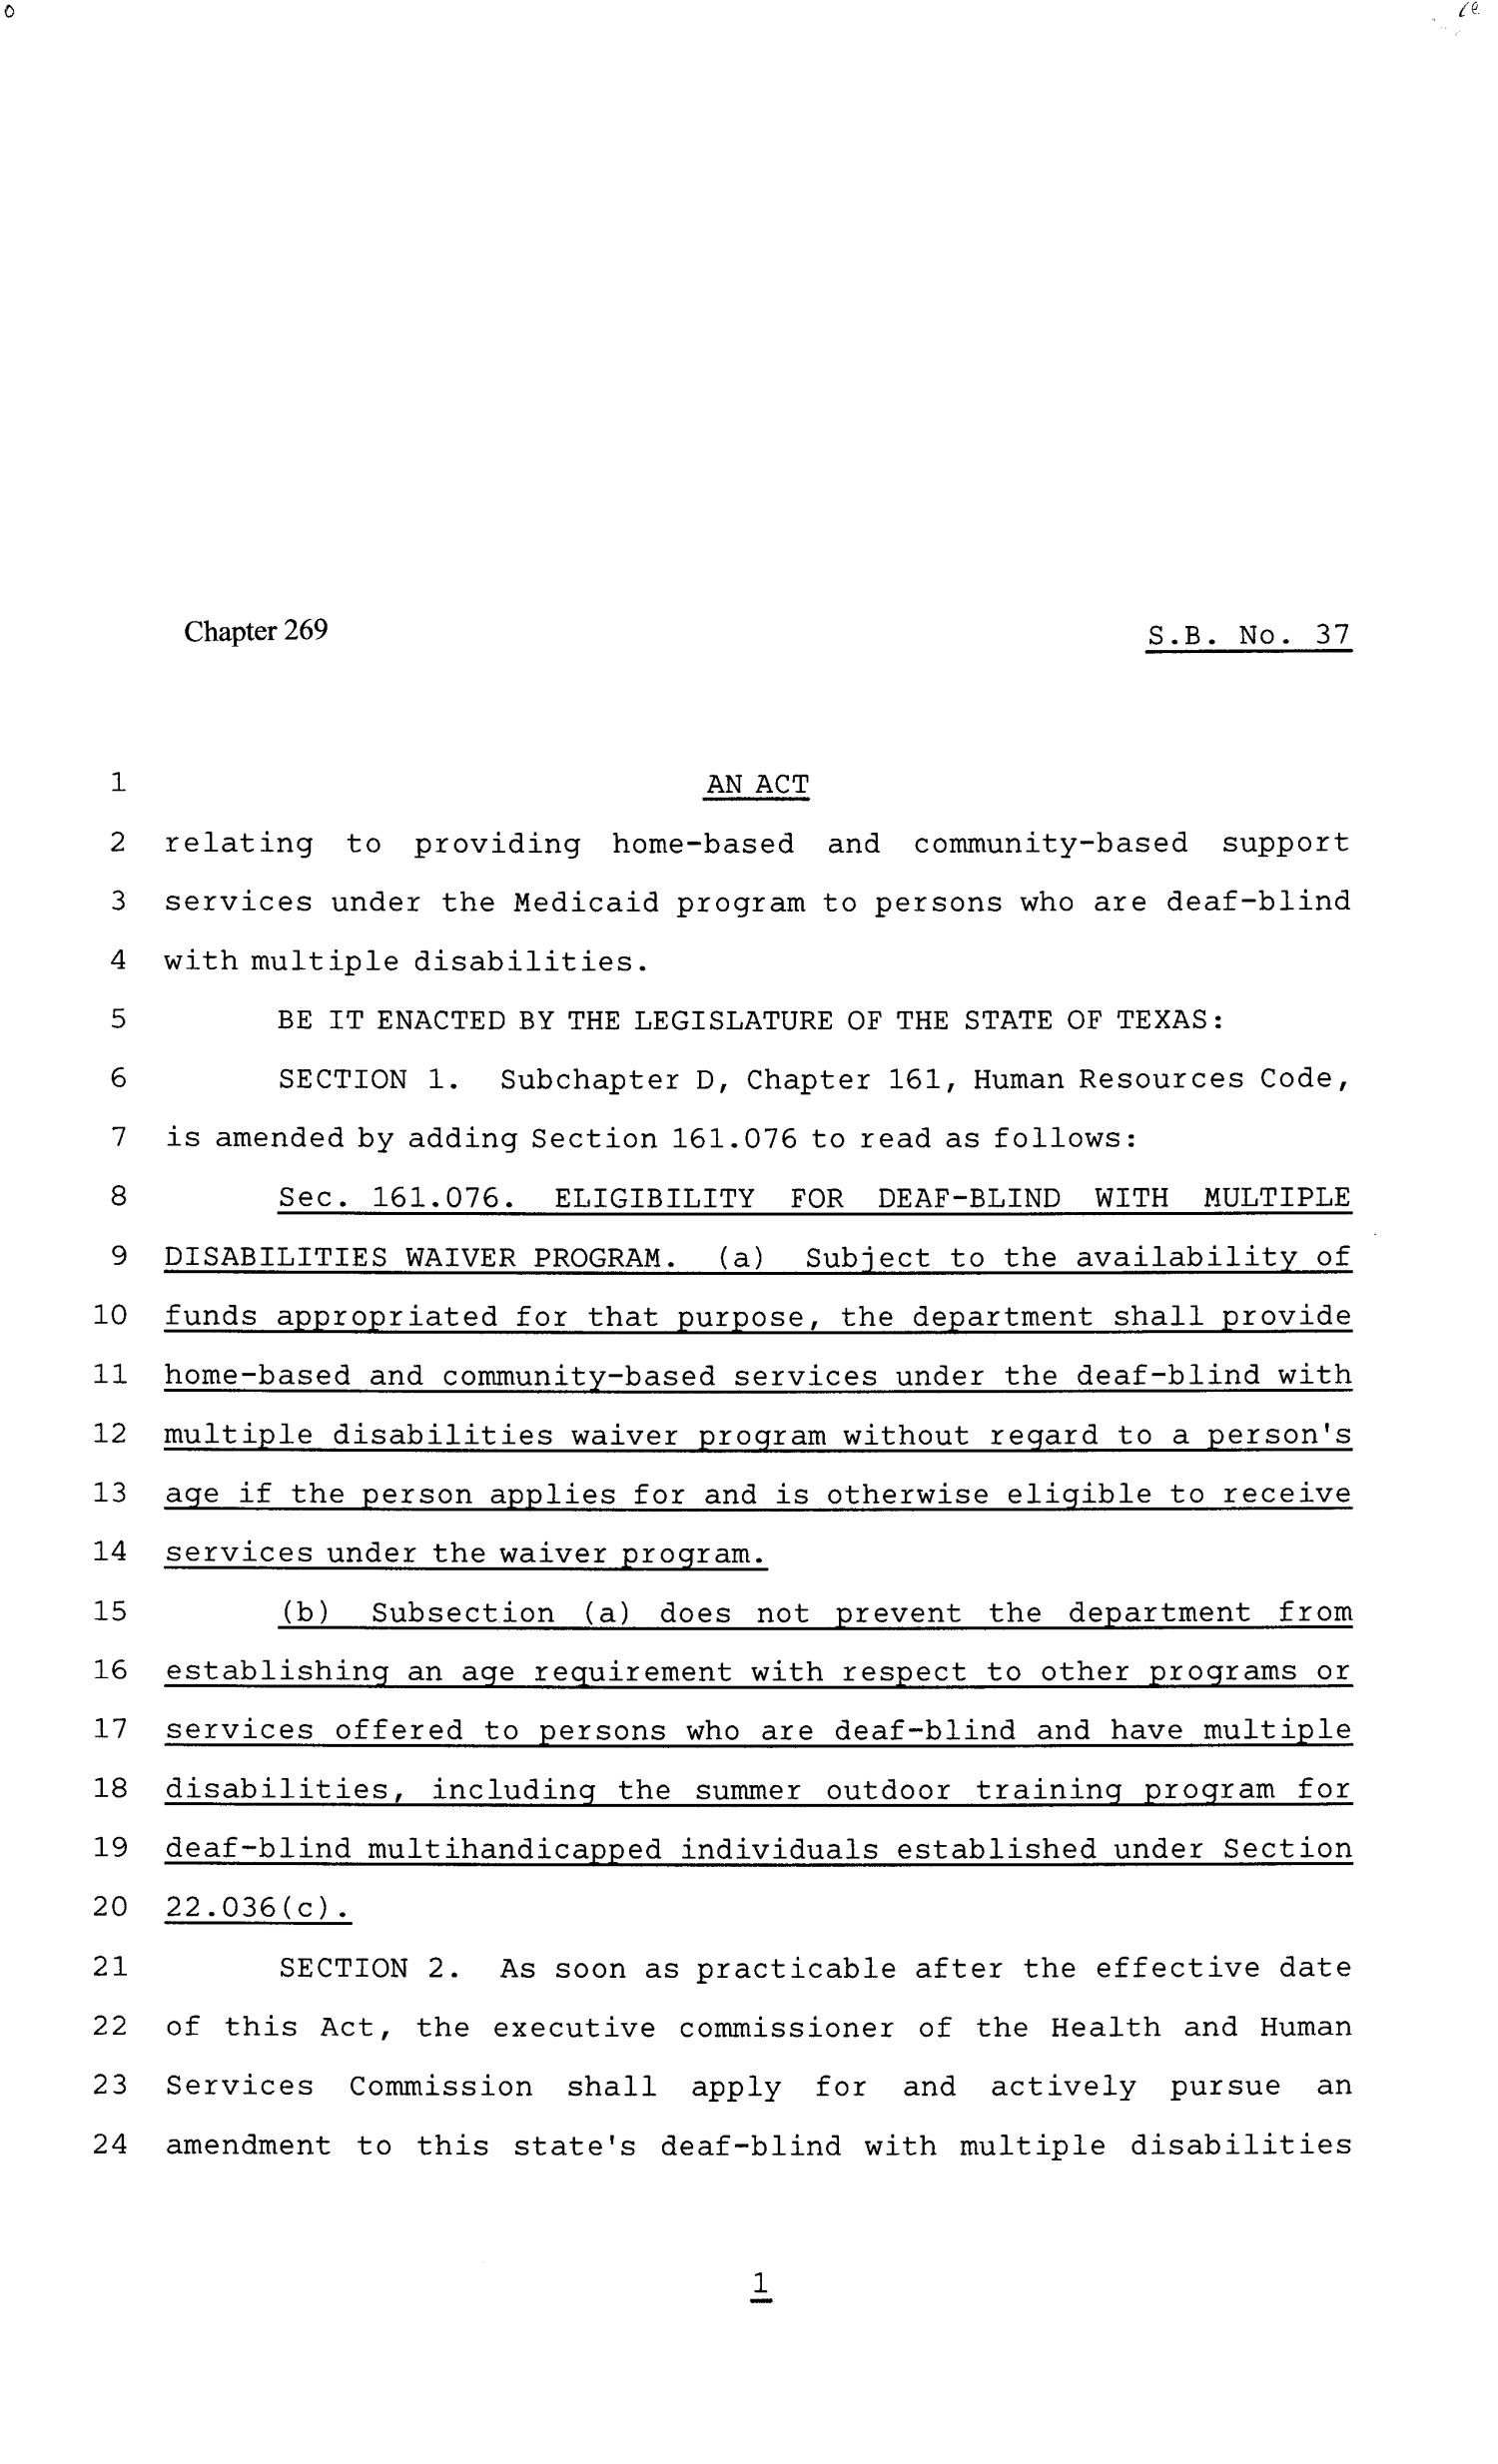 81st Texas Legislature, Senate Bill 37, Chapter 269
                                                
                                                    [Sequence #]: 1 of 3
                                                